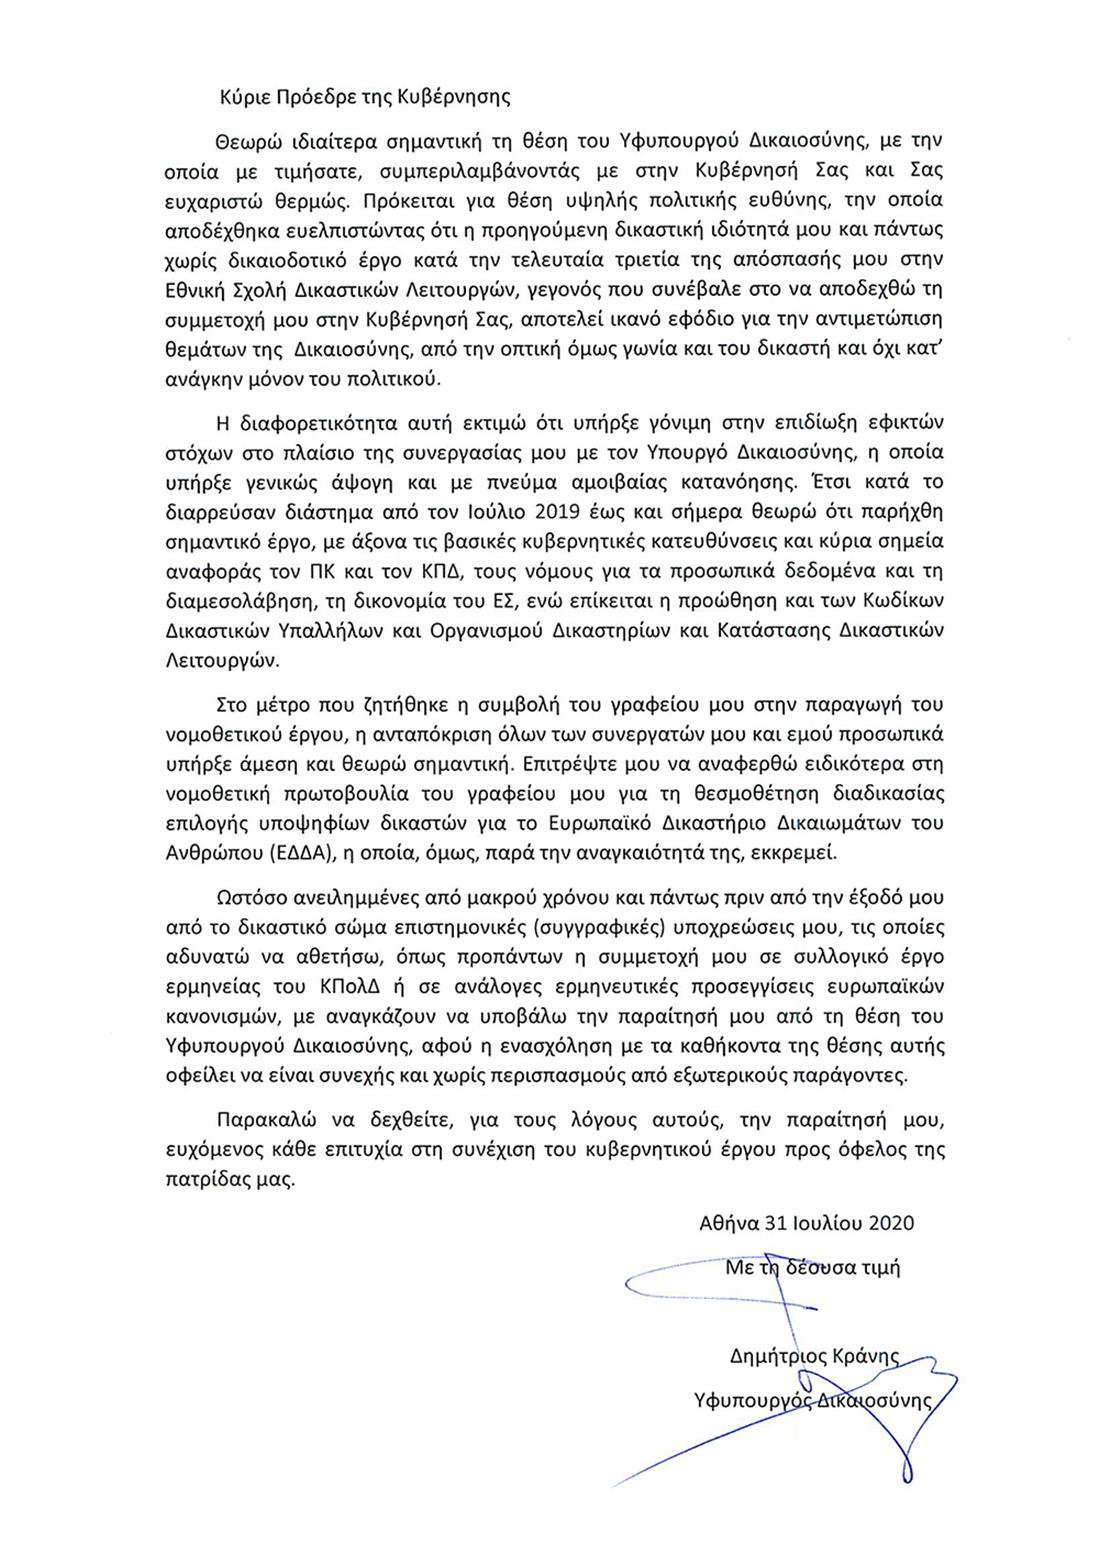 Επιστολή - παραίτηση - Δημήτρης Κράνης